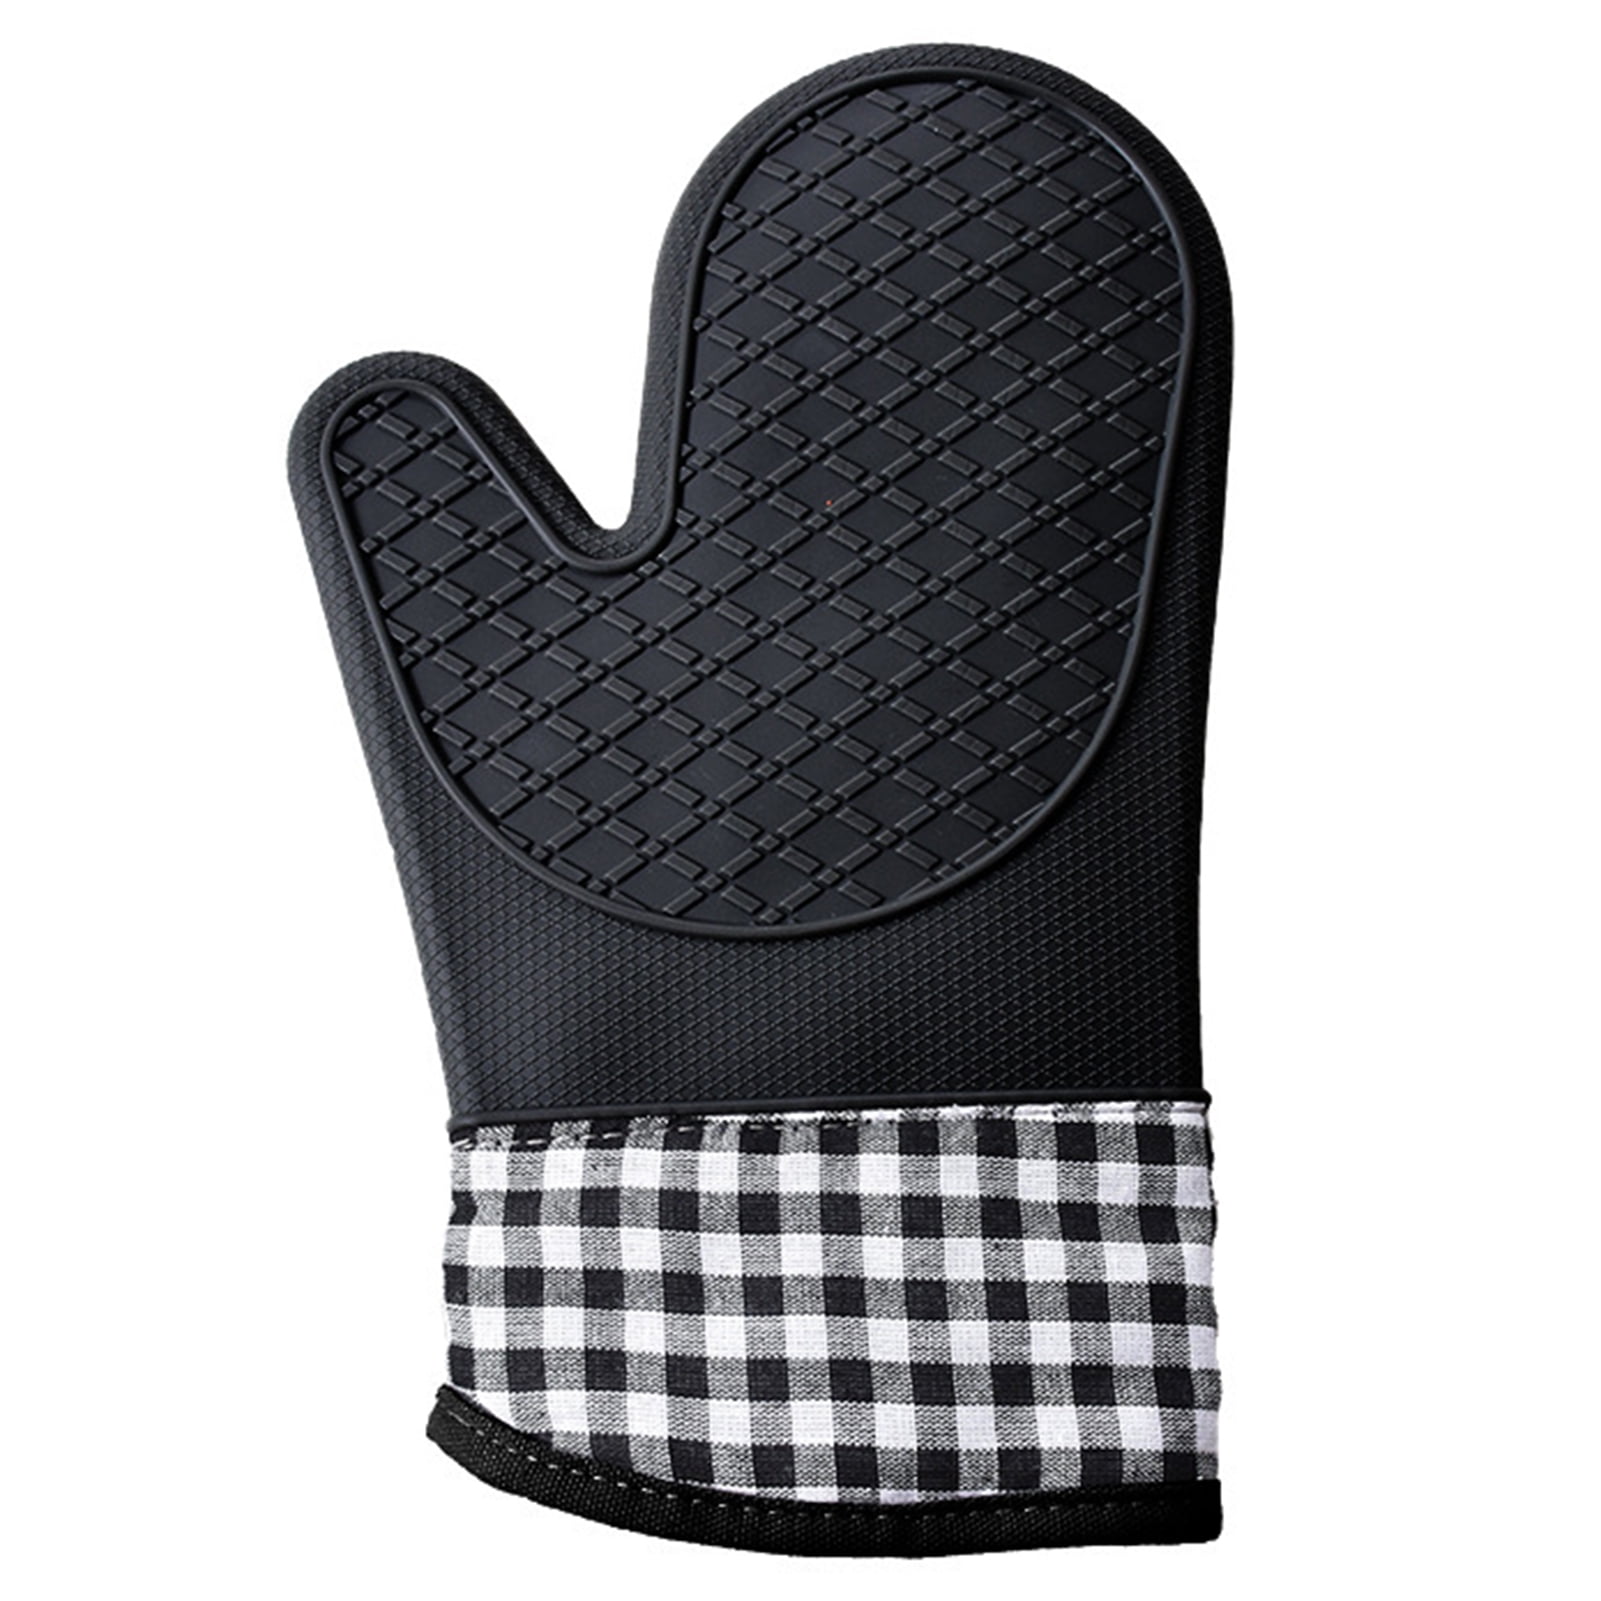 Finlayson Coronna Oven Glove, Cotton, Black/White, 15 x 30 cm